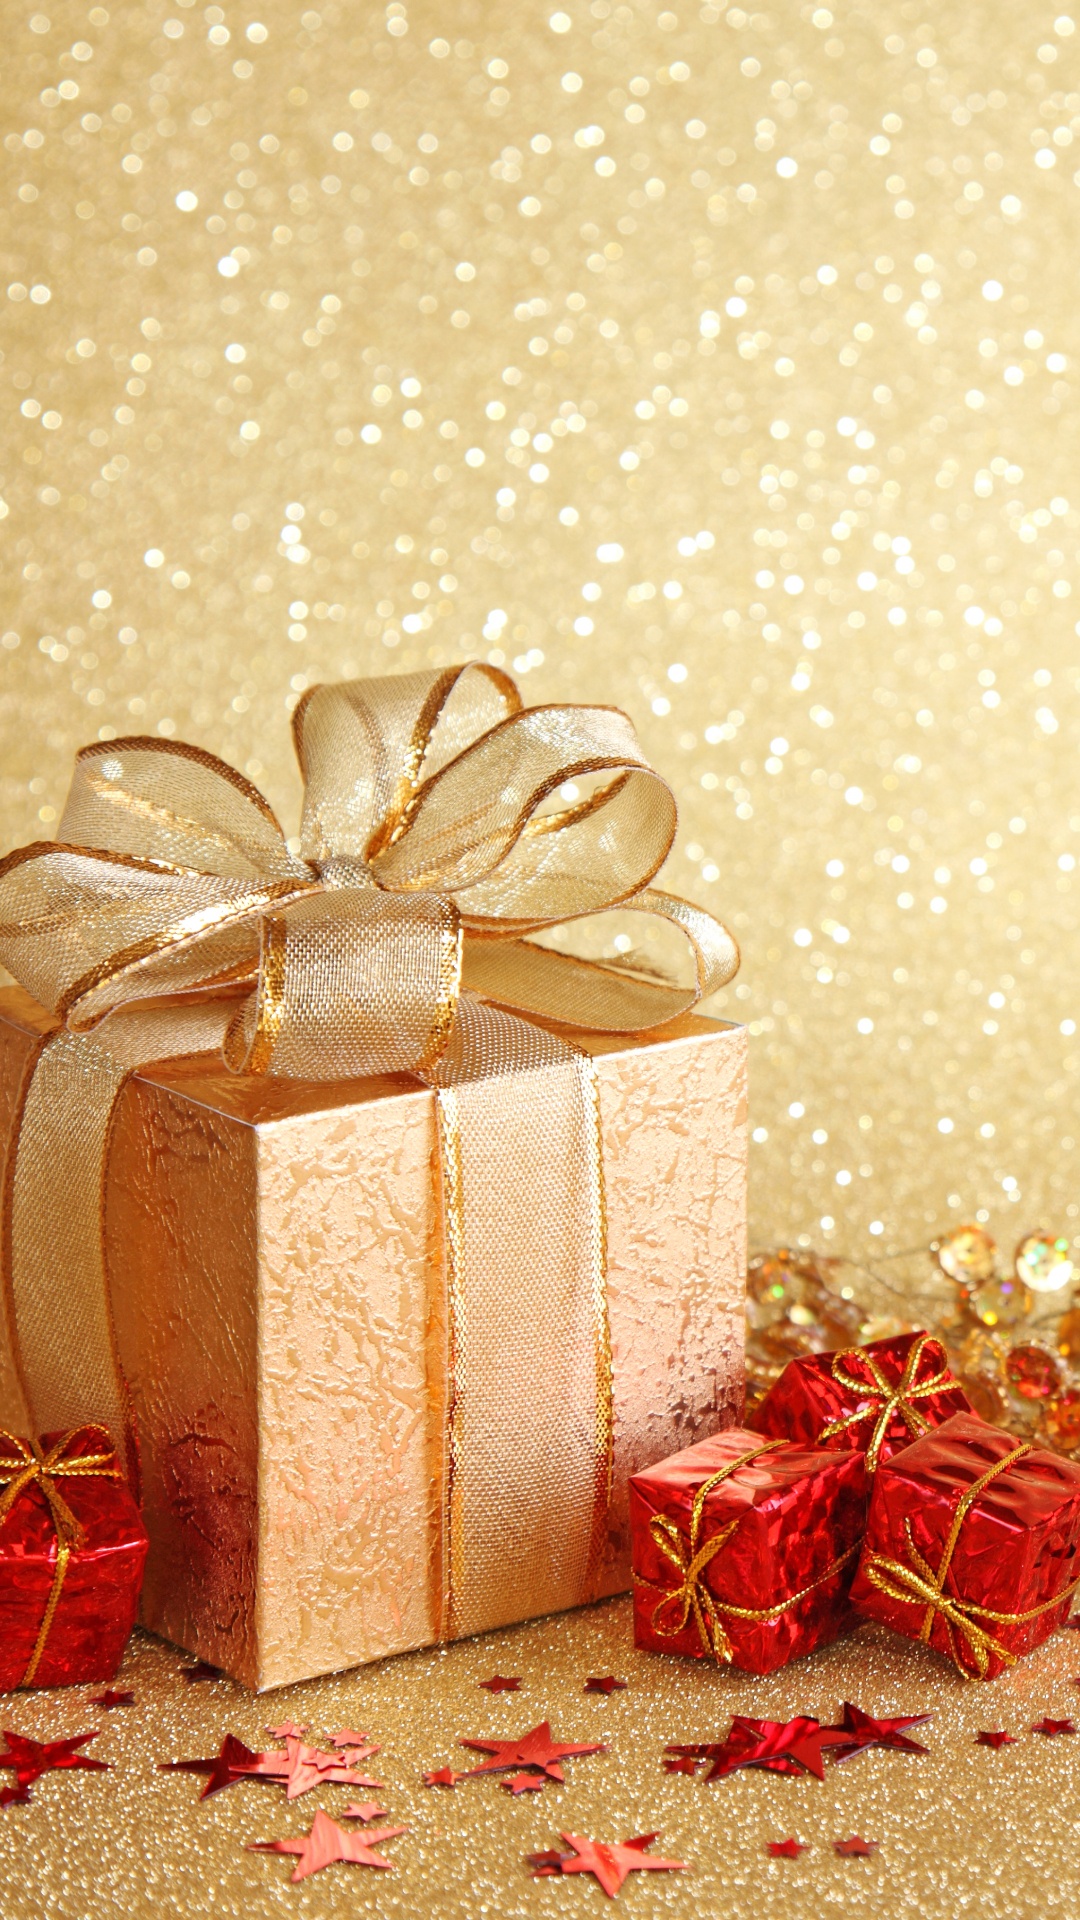 新的一年, 圣诞节那天, 礼品包装, 丝带, 圣诞装饰 壁纸 1080x1920 允许